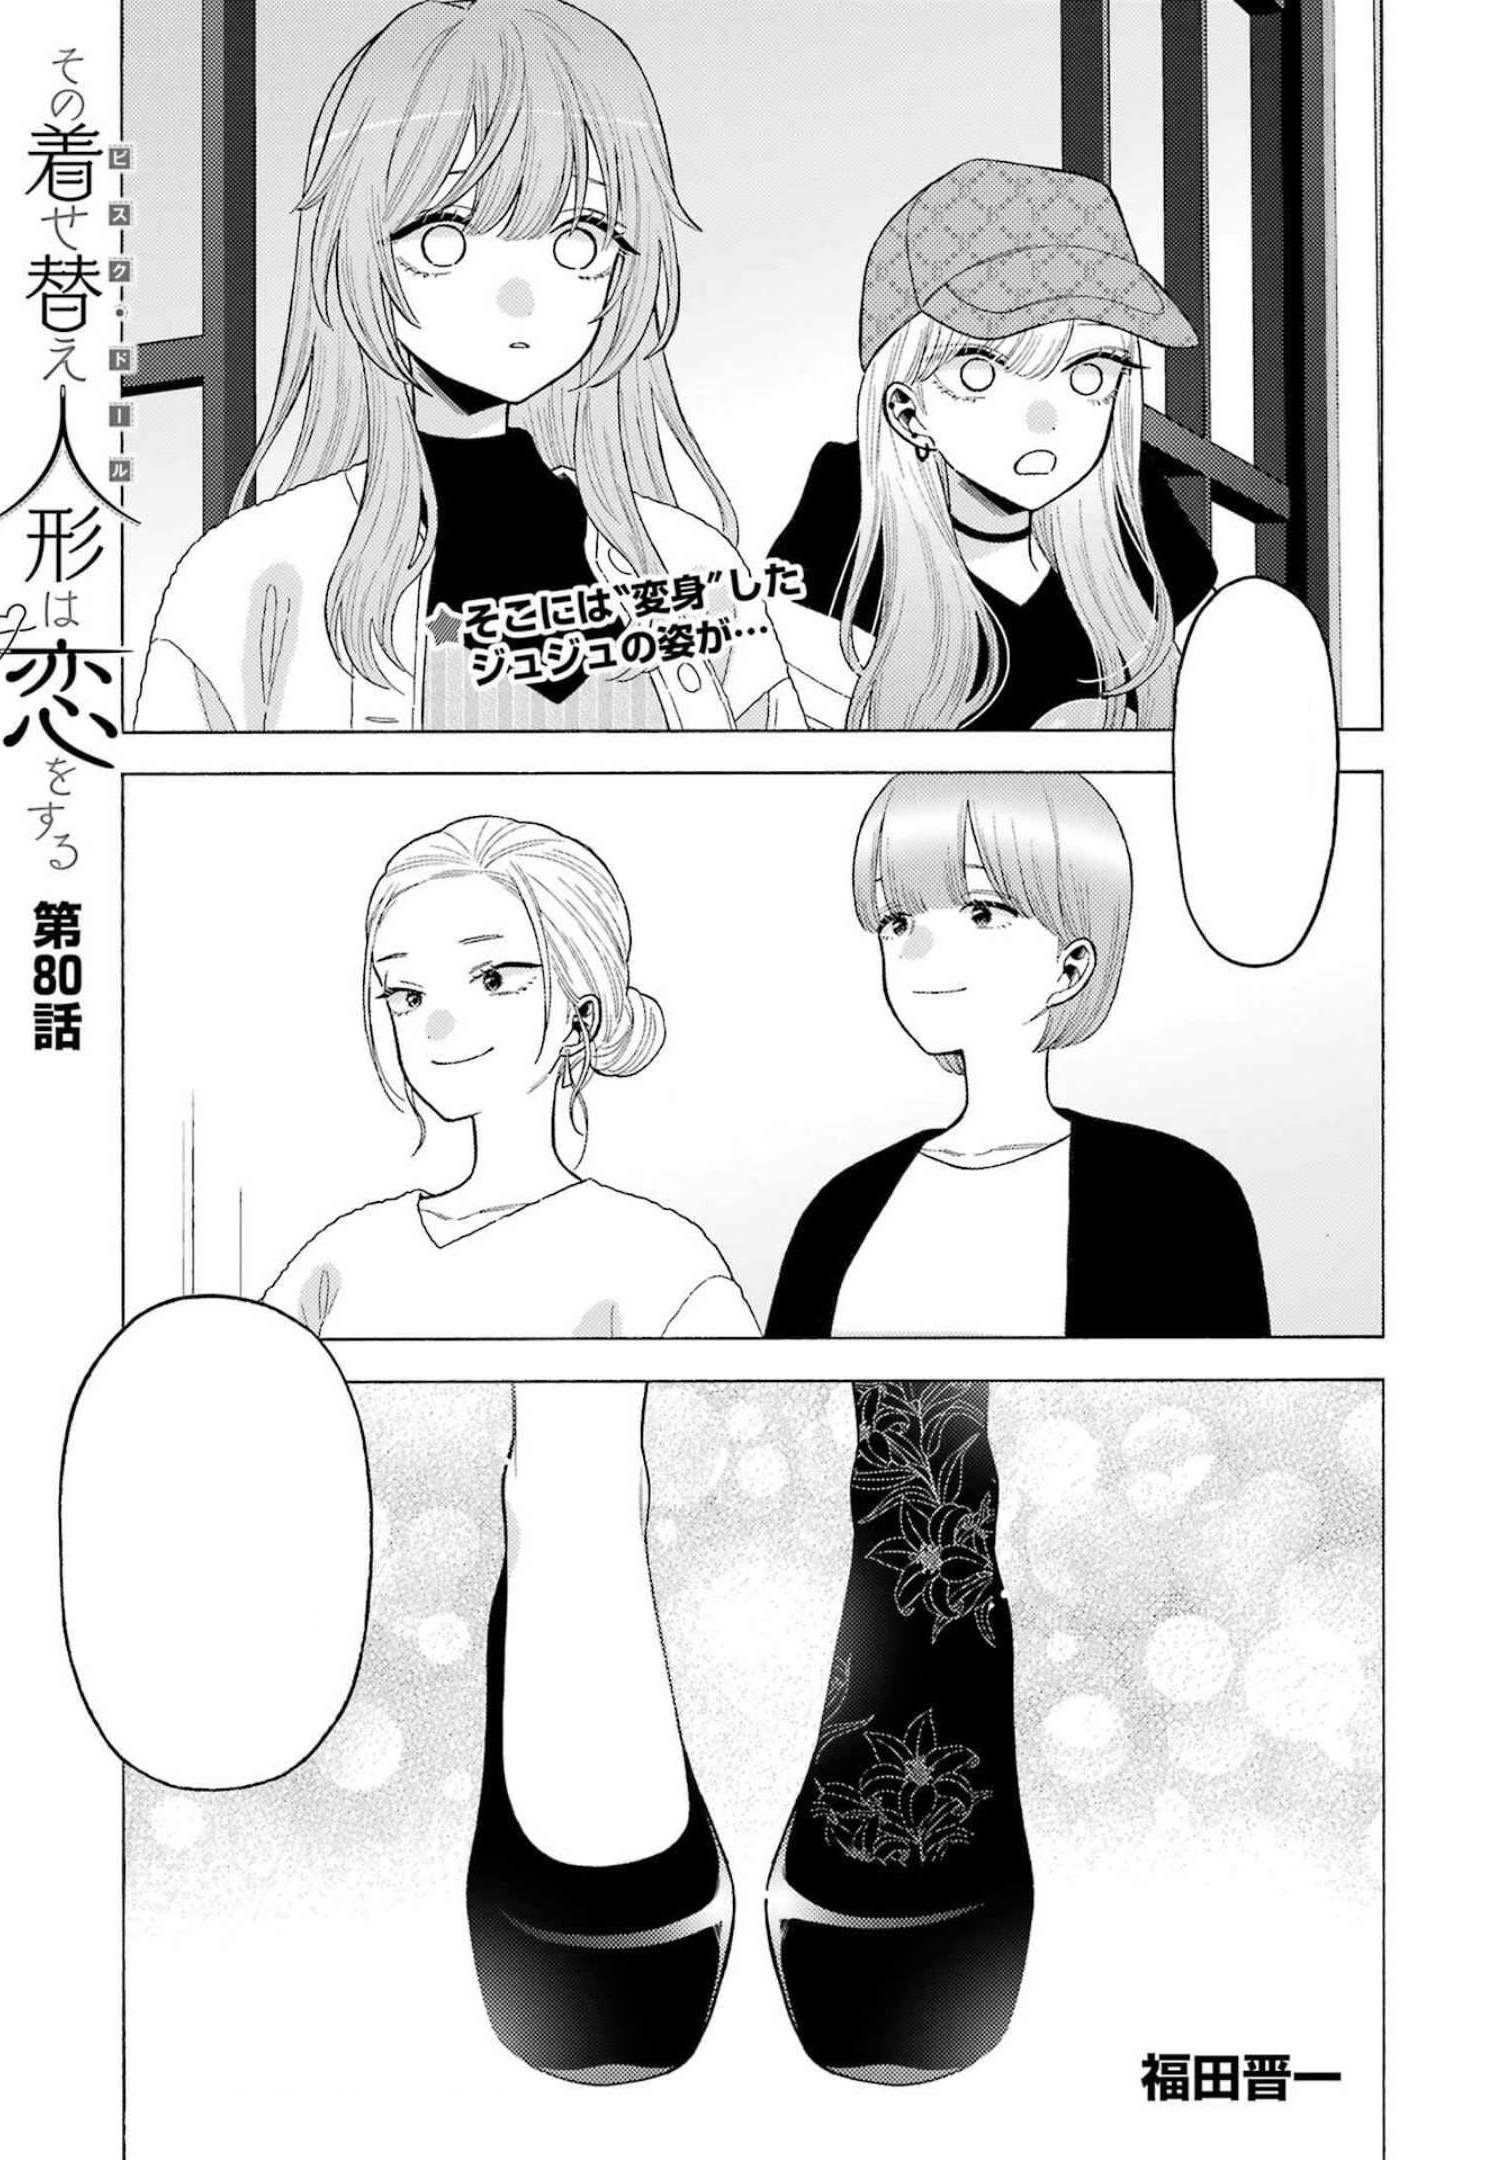 Sono Bisque Doll wa Koi wo Suru Capítulo 89 - Manga Online